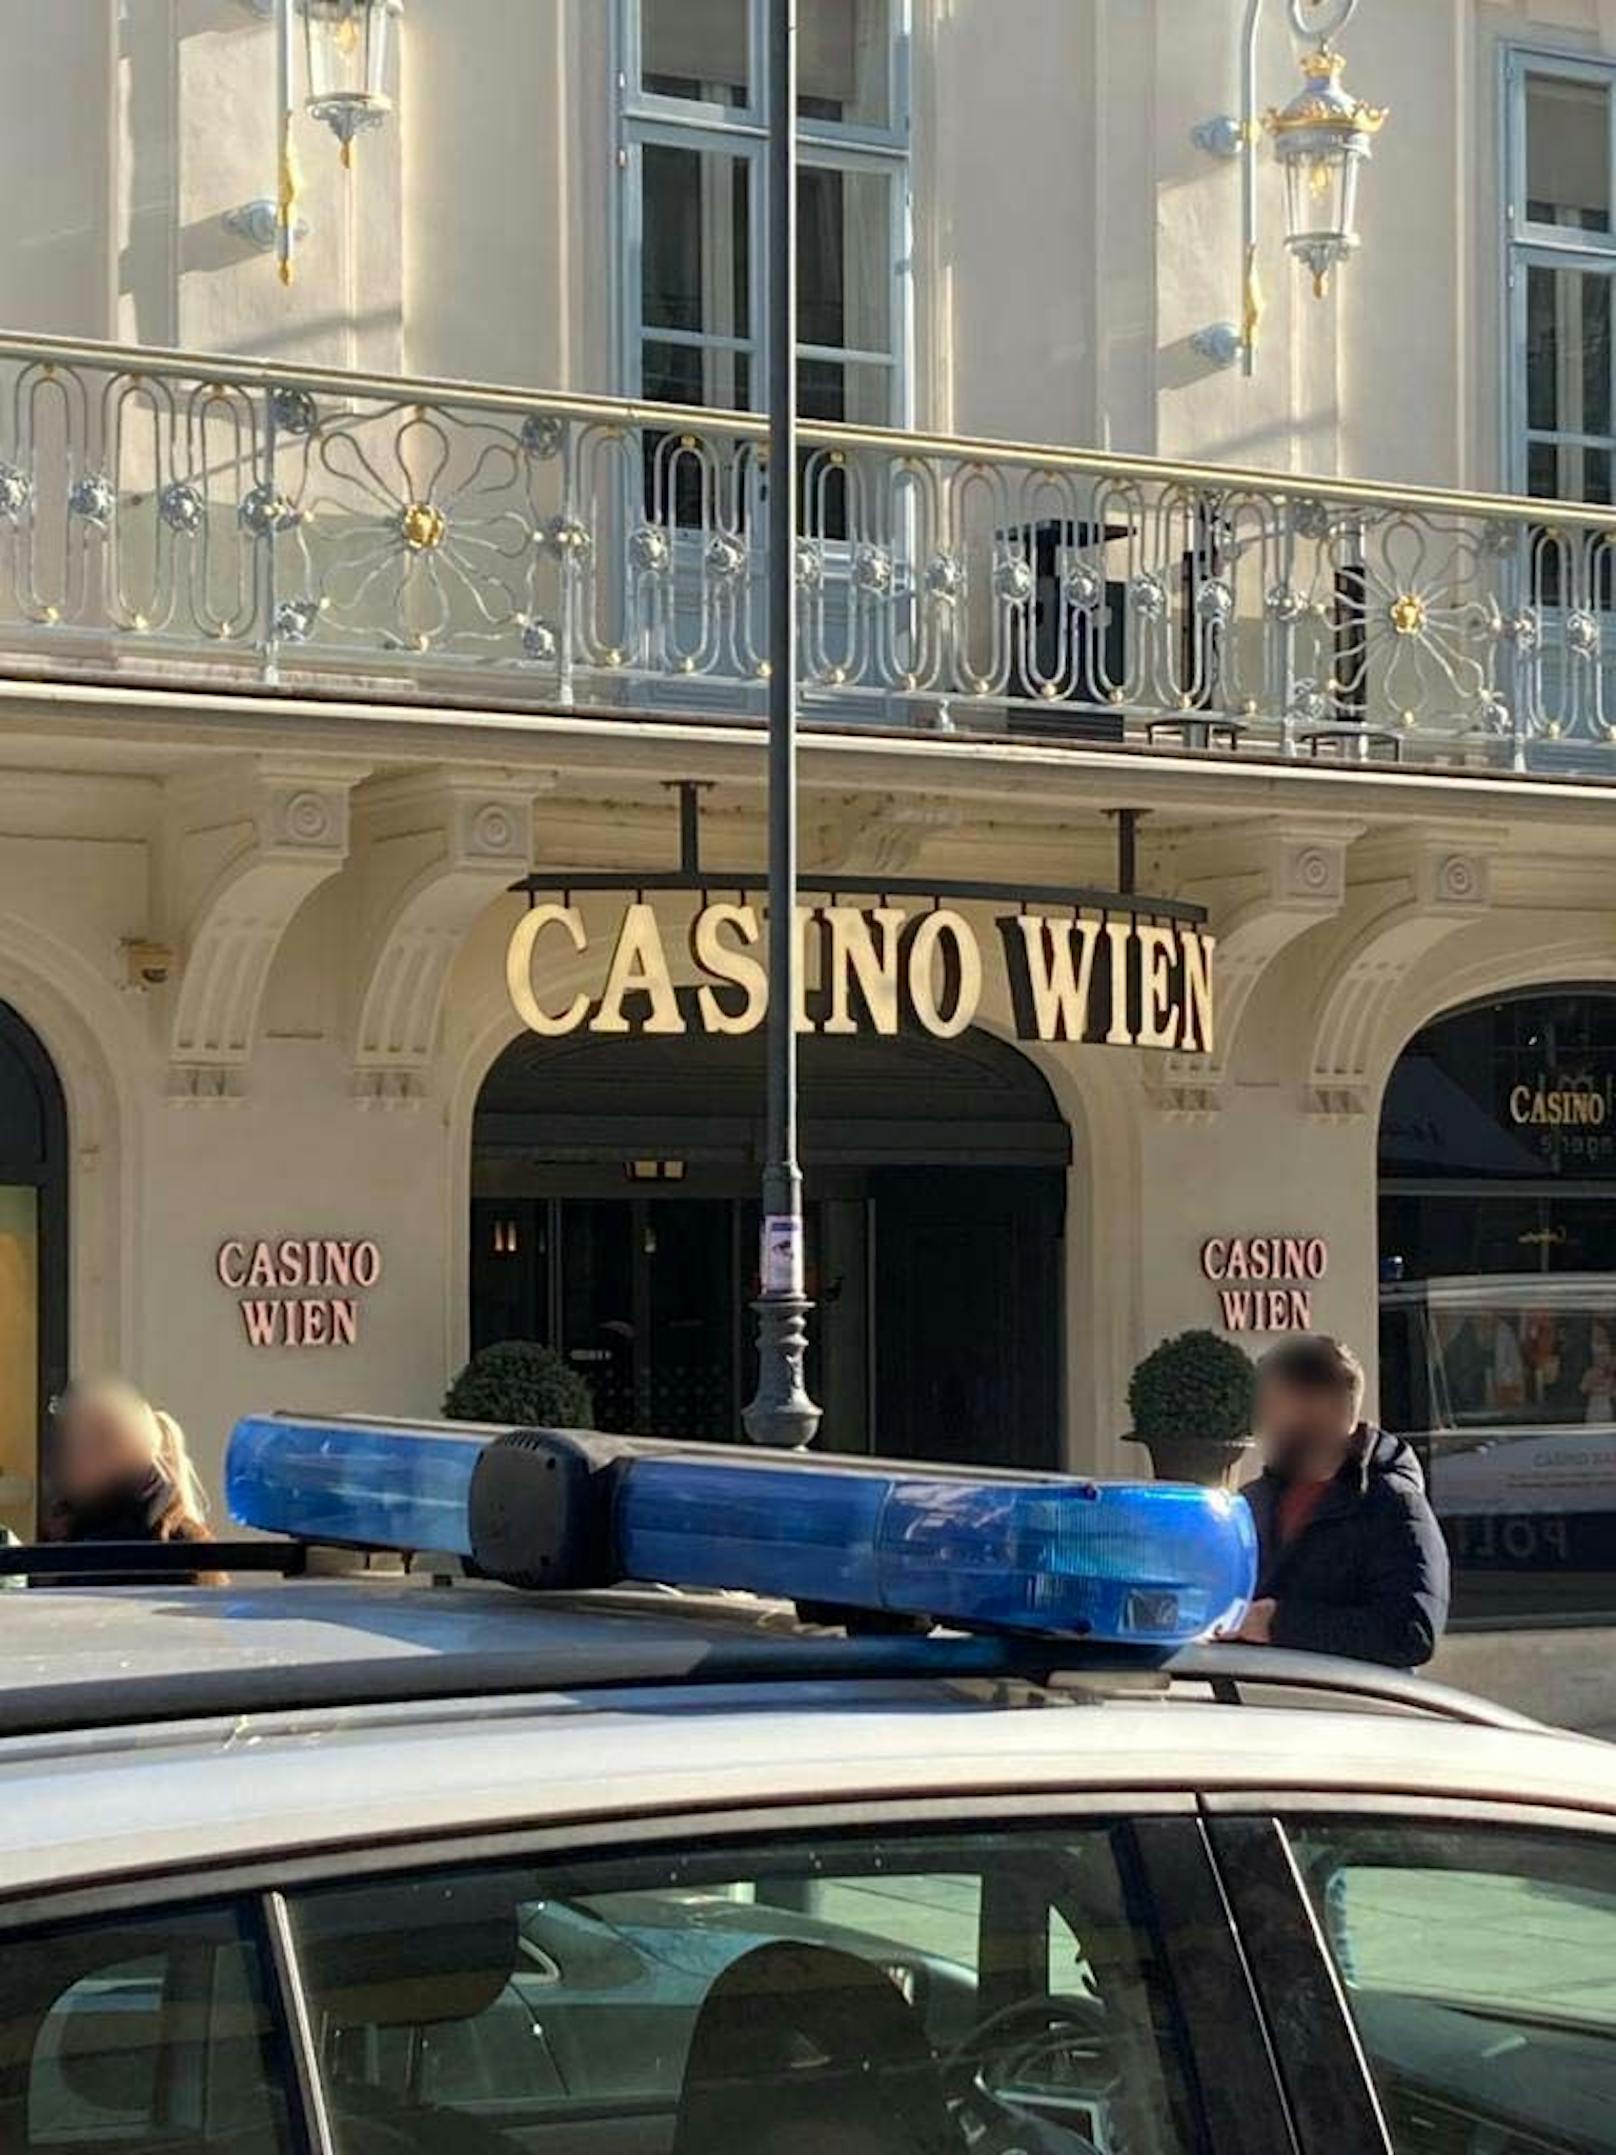 Polizei-Einsatz im Casino Wien